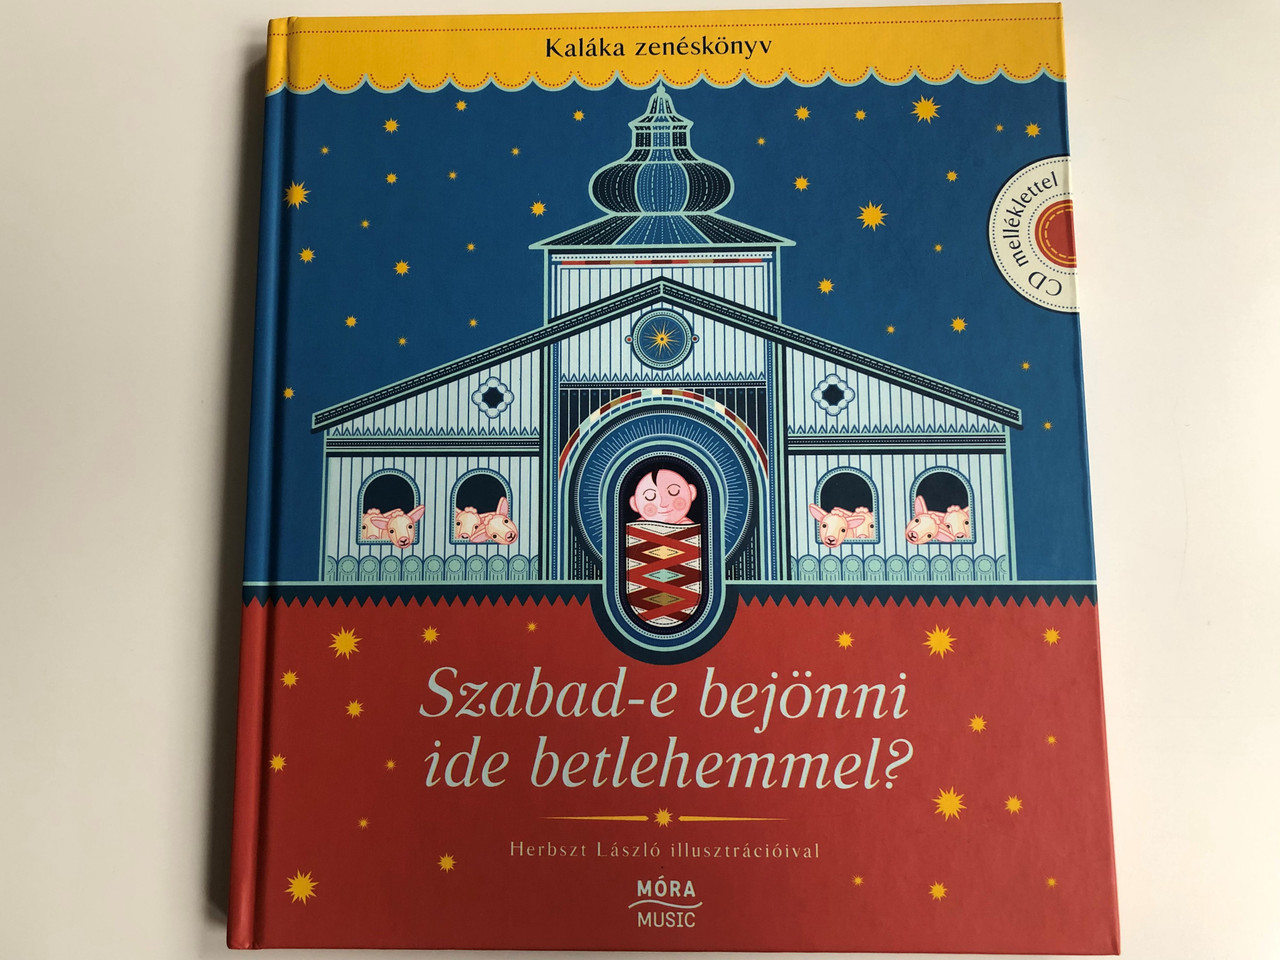 Kaláka Zenéskönyv - Szabad-e bejönni ide Betlehemmel? by Becze Gábor,  Gryllus Dániel / Illustrated by Herbszt László